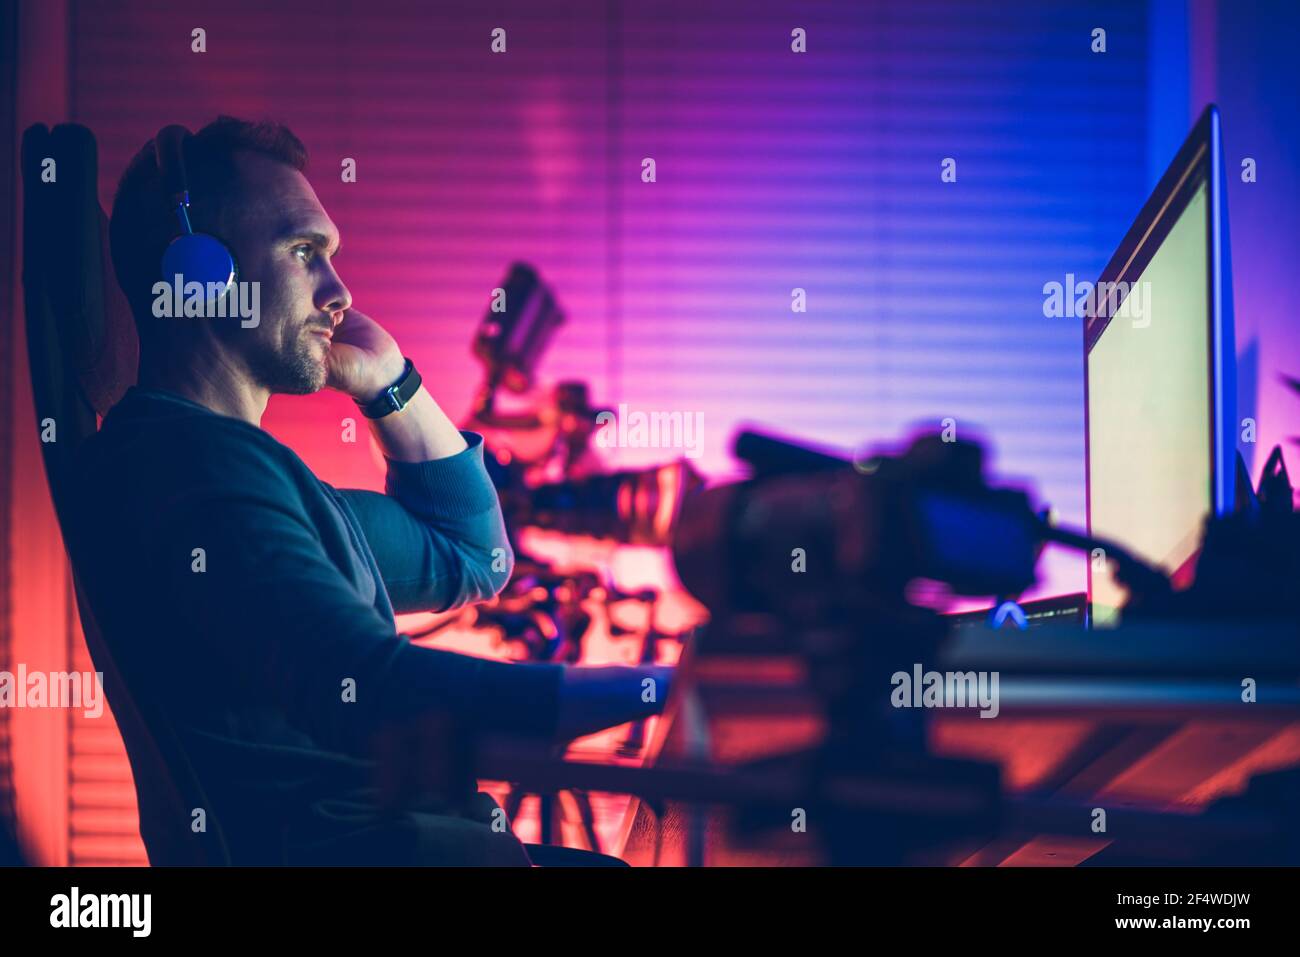 Kaukasische Männer in seinem 40s trägt Kopfhörer in seinem Home Office Bearbeitung Vlogs auf seinem Desktop-Computer. Kühle blaue und rote Raumbeleuchtung. Stockfoto